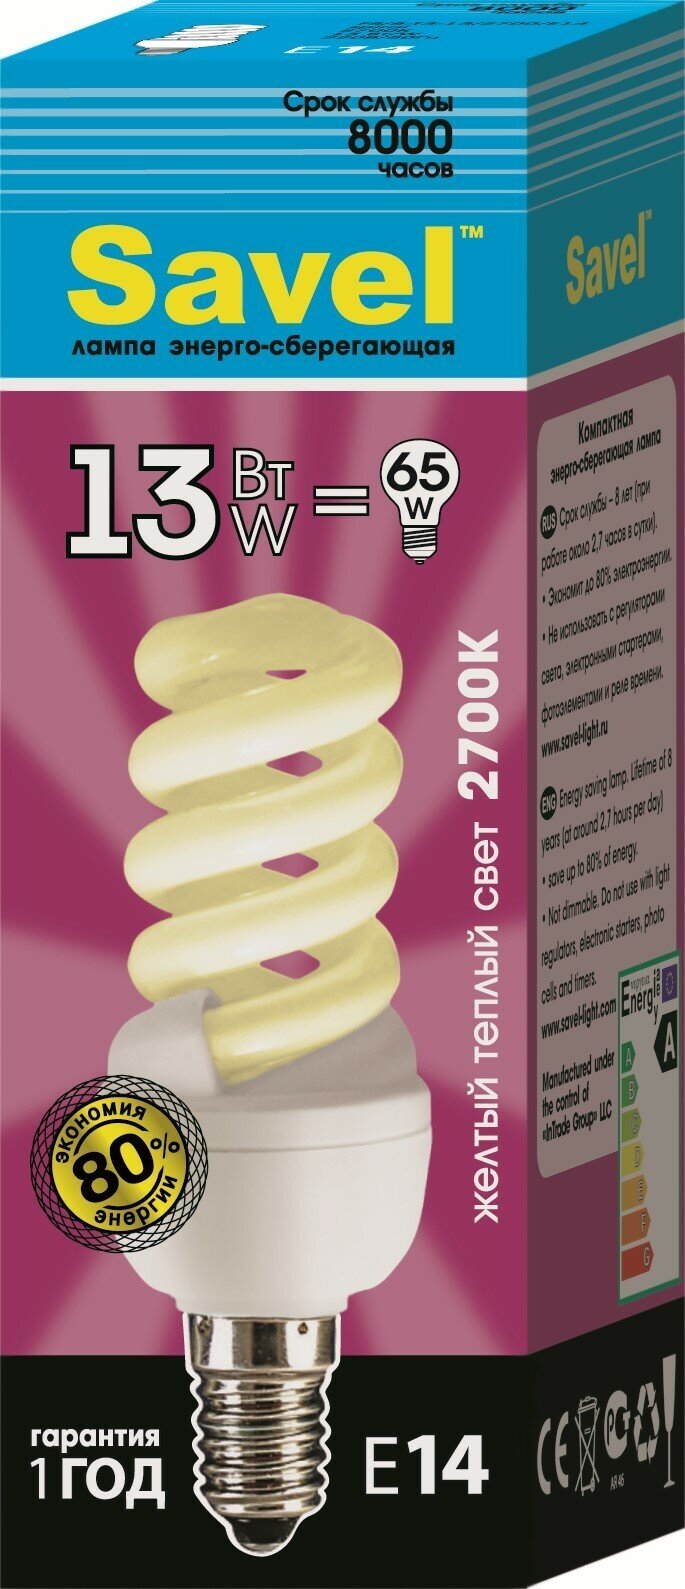 Лампочка SavelFS/8-T3-13/2700/E14, Желтый свет, 13 Вт, E14, Люминесцентная (энергосберегающая), 1 шт.